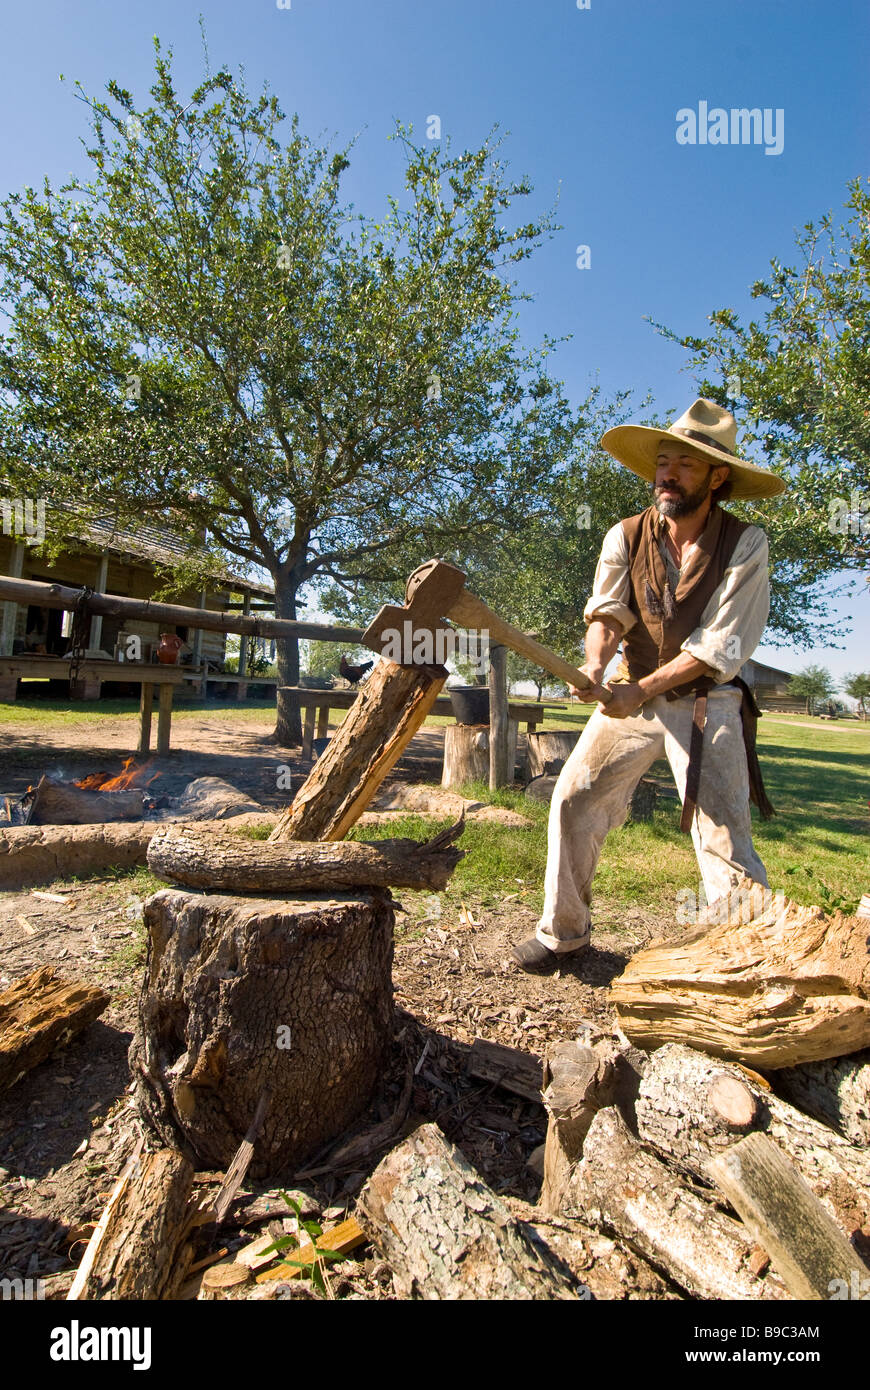 Colono cortando madera 1830 Jones Ganadera George Ranch Historical Park Houston TX Texas atracción turística Foto de stock